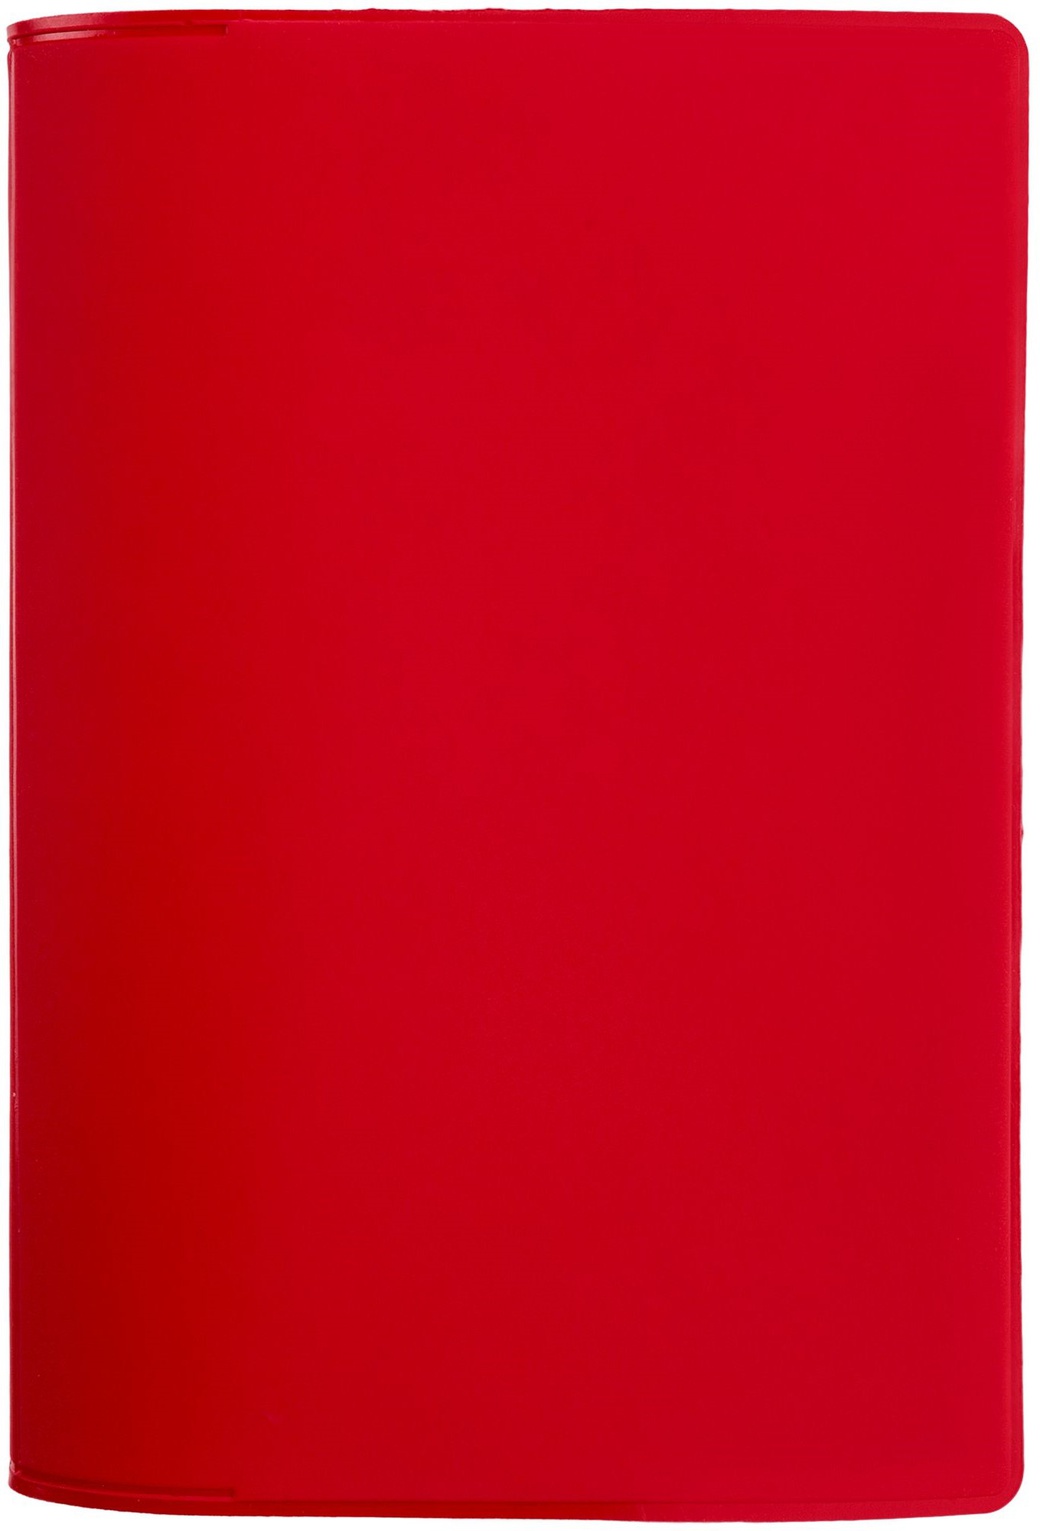 Обложка для паспорта Dorset, красная фото